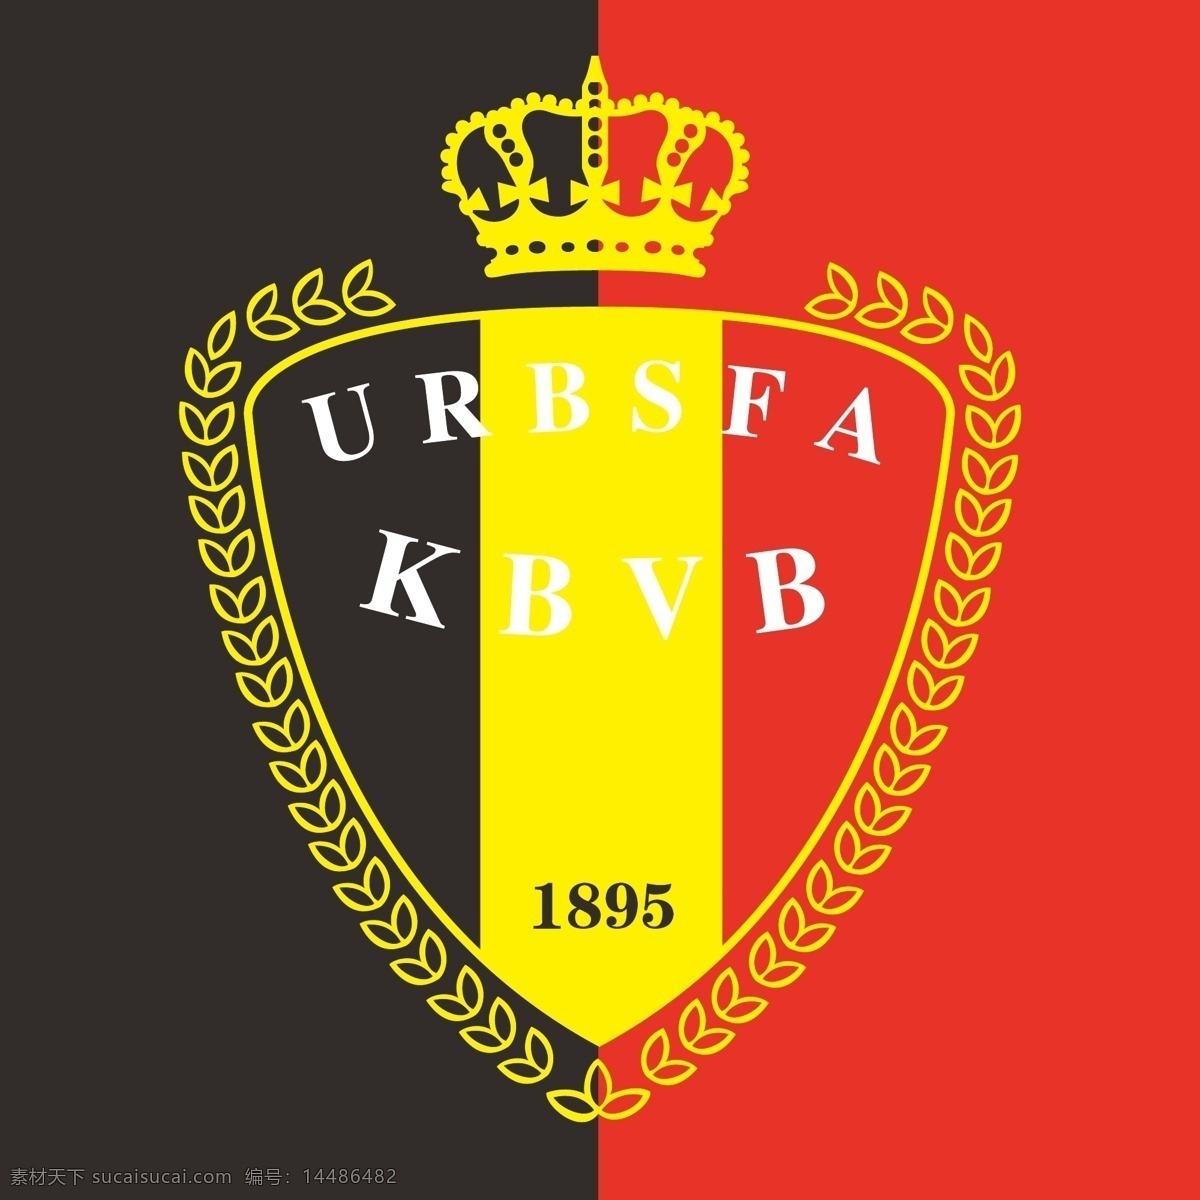 比利时 国家队 标志 欧洲 足球 运动 红魔 欧洲杯 欧冠 世界杯 足球标志 logo设计